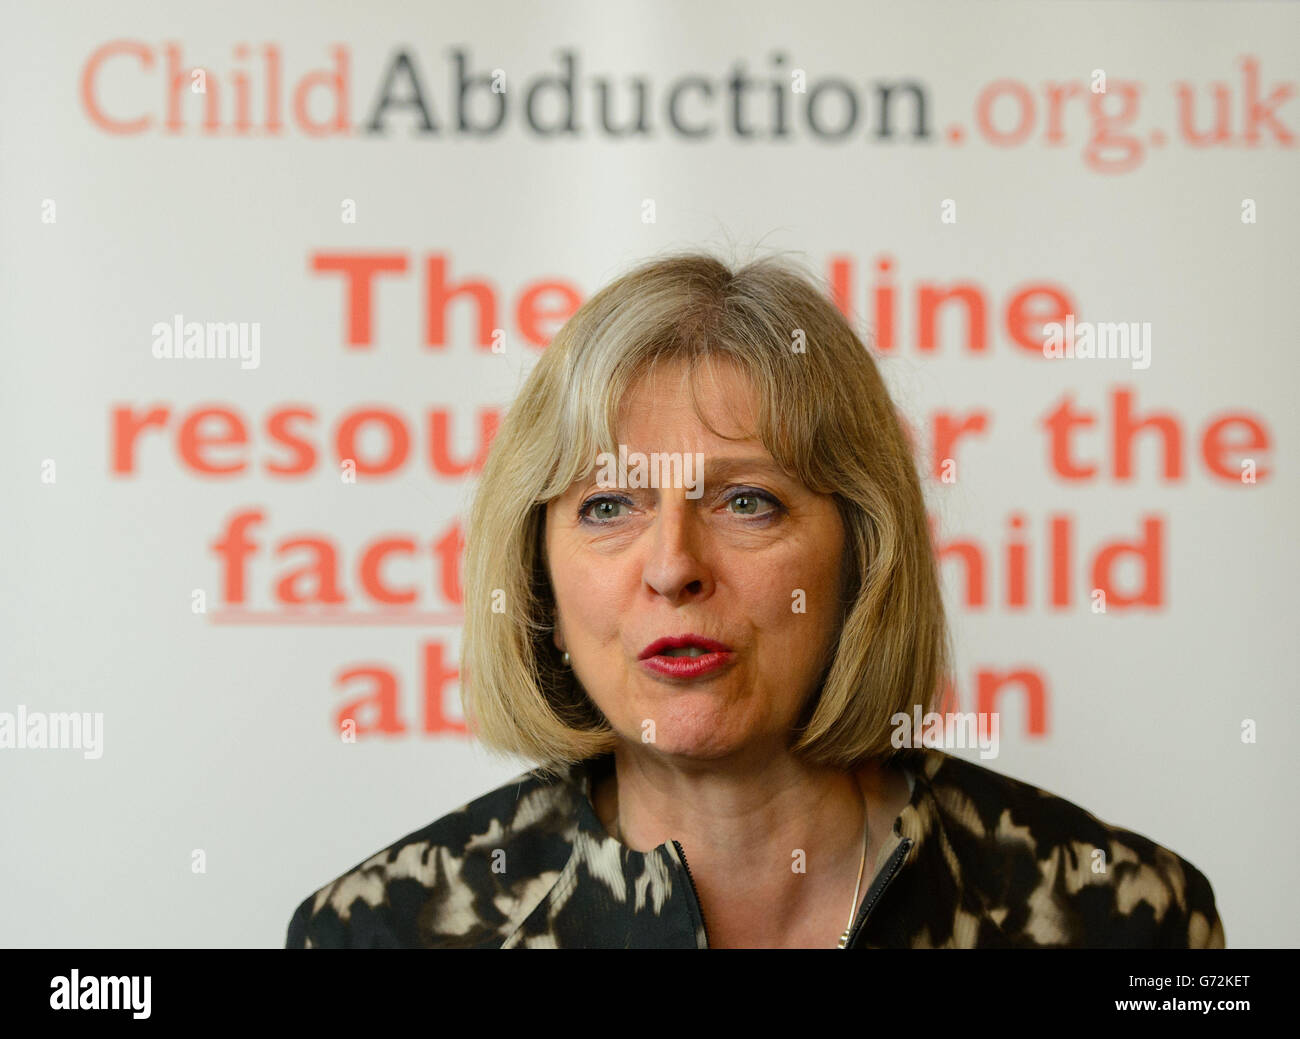 Il Segretario per l'interno Theresa May parla al lancio del nuovo sistema di allarme per il salvataggio dei bambini e di un nuovo hub per l'adduzione dei bambini, presso la House of Lords, a Westminster, nel centro di Londra. Foto Stock